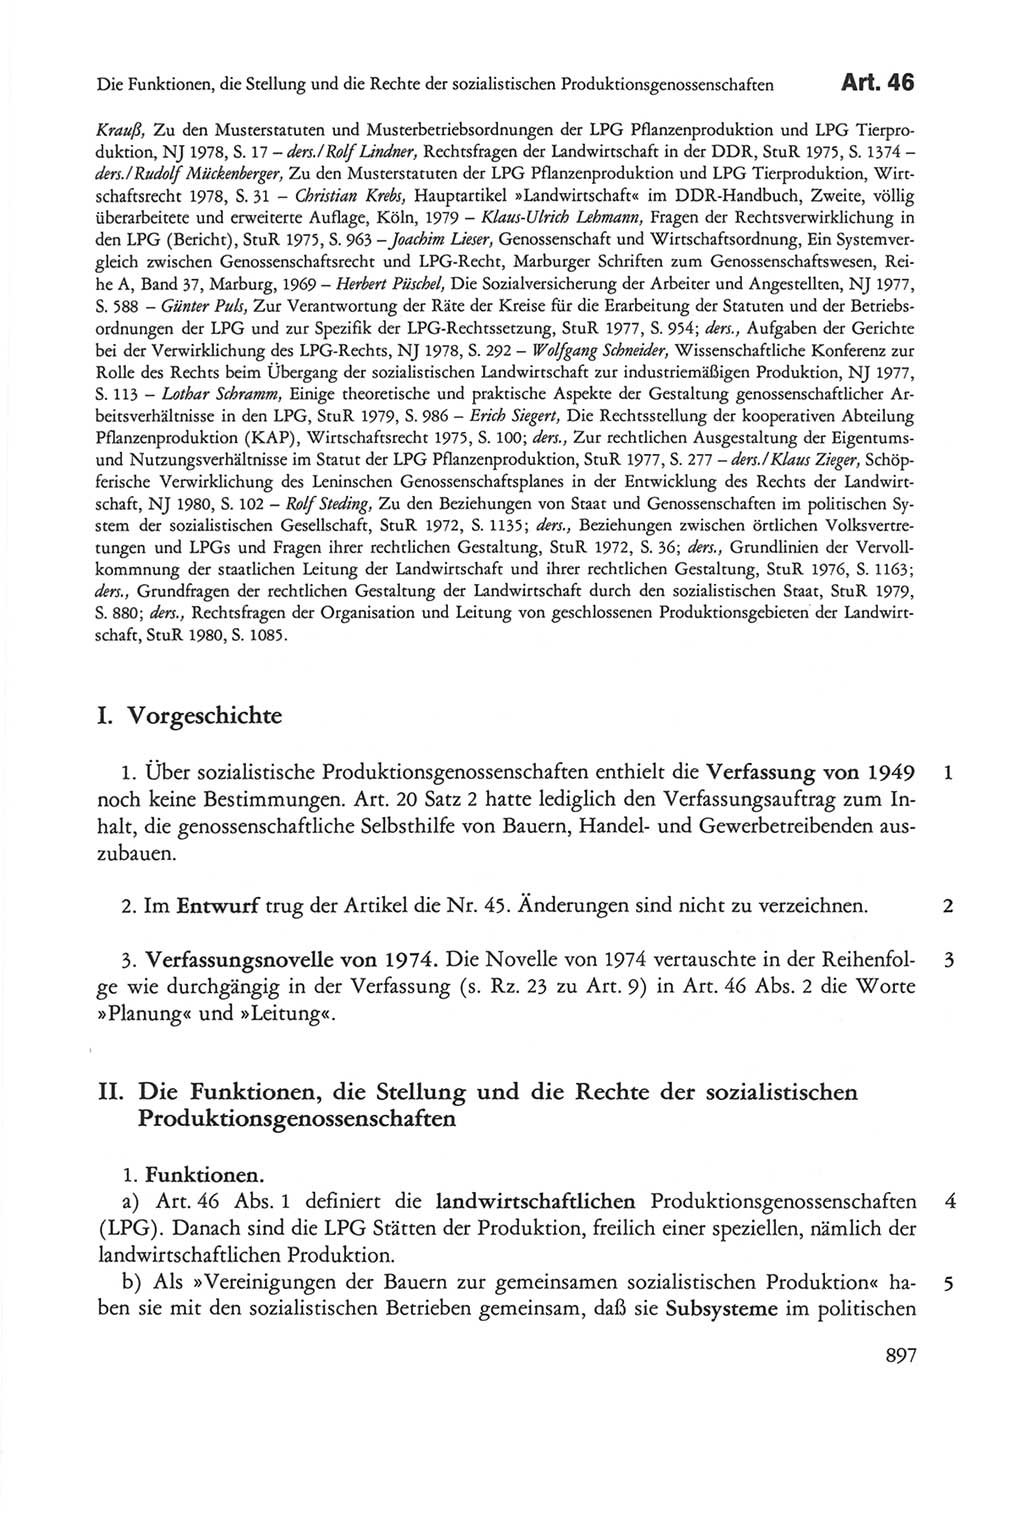 Die sozialistische Verfassung der Deutschen Demokratischen Republik (DDR), Kommentar 1982, Seite 897 (Soz. Verf. DDR Komm. 1982, S. 897)